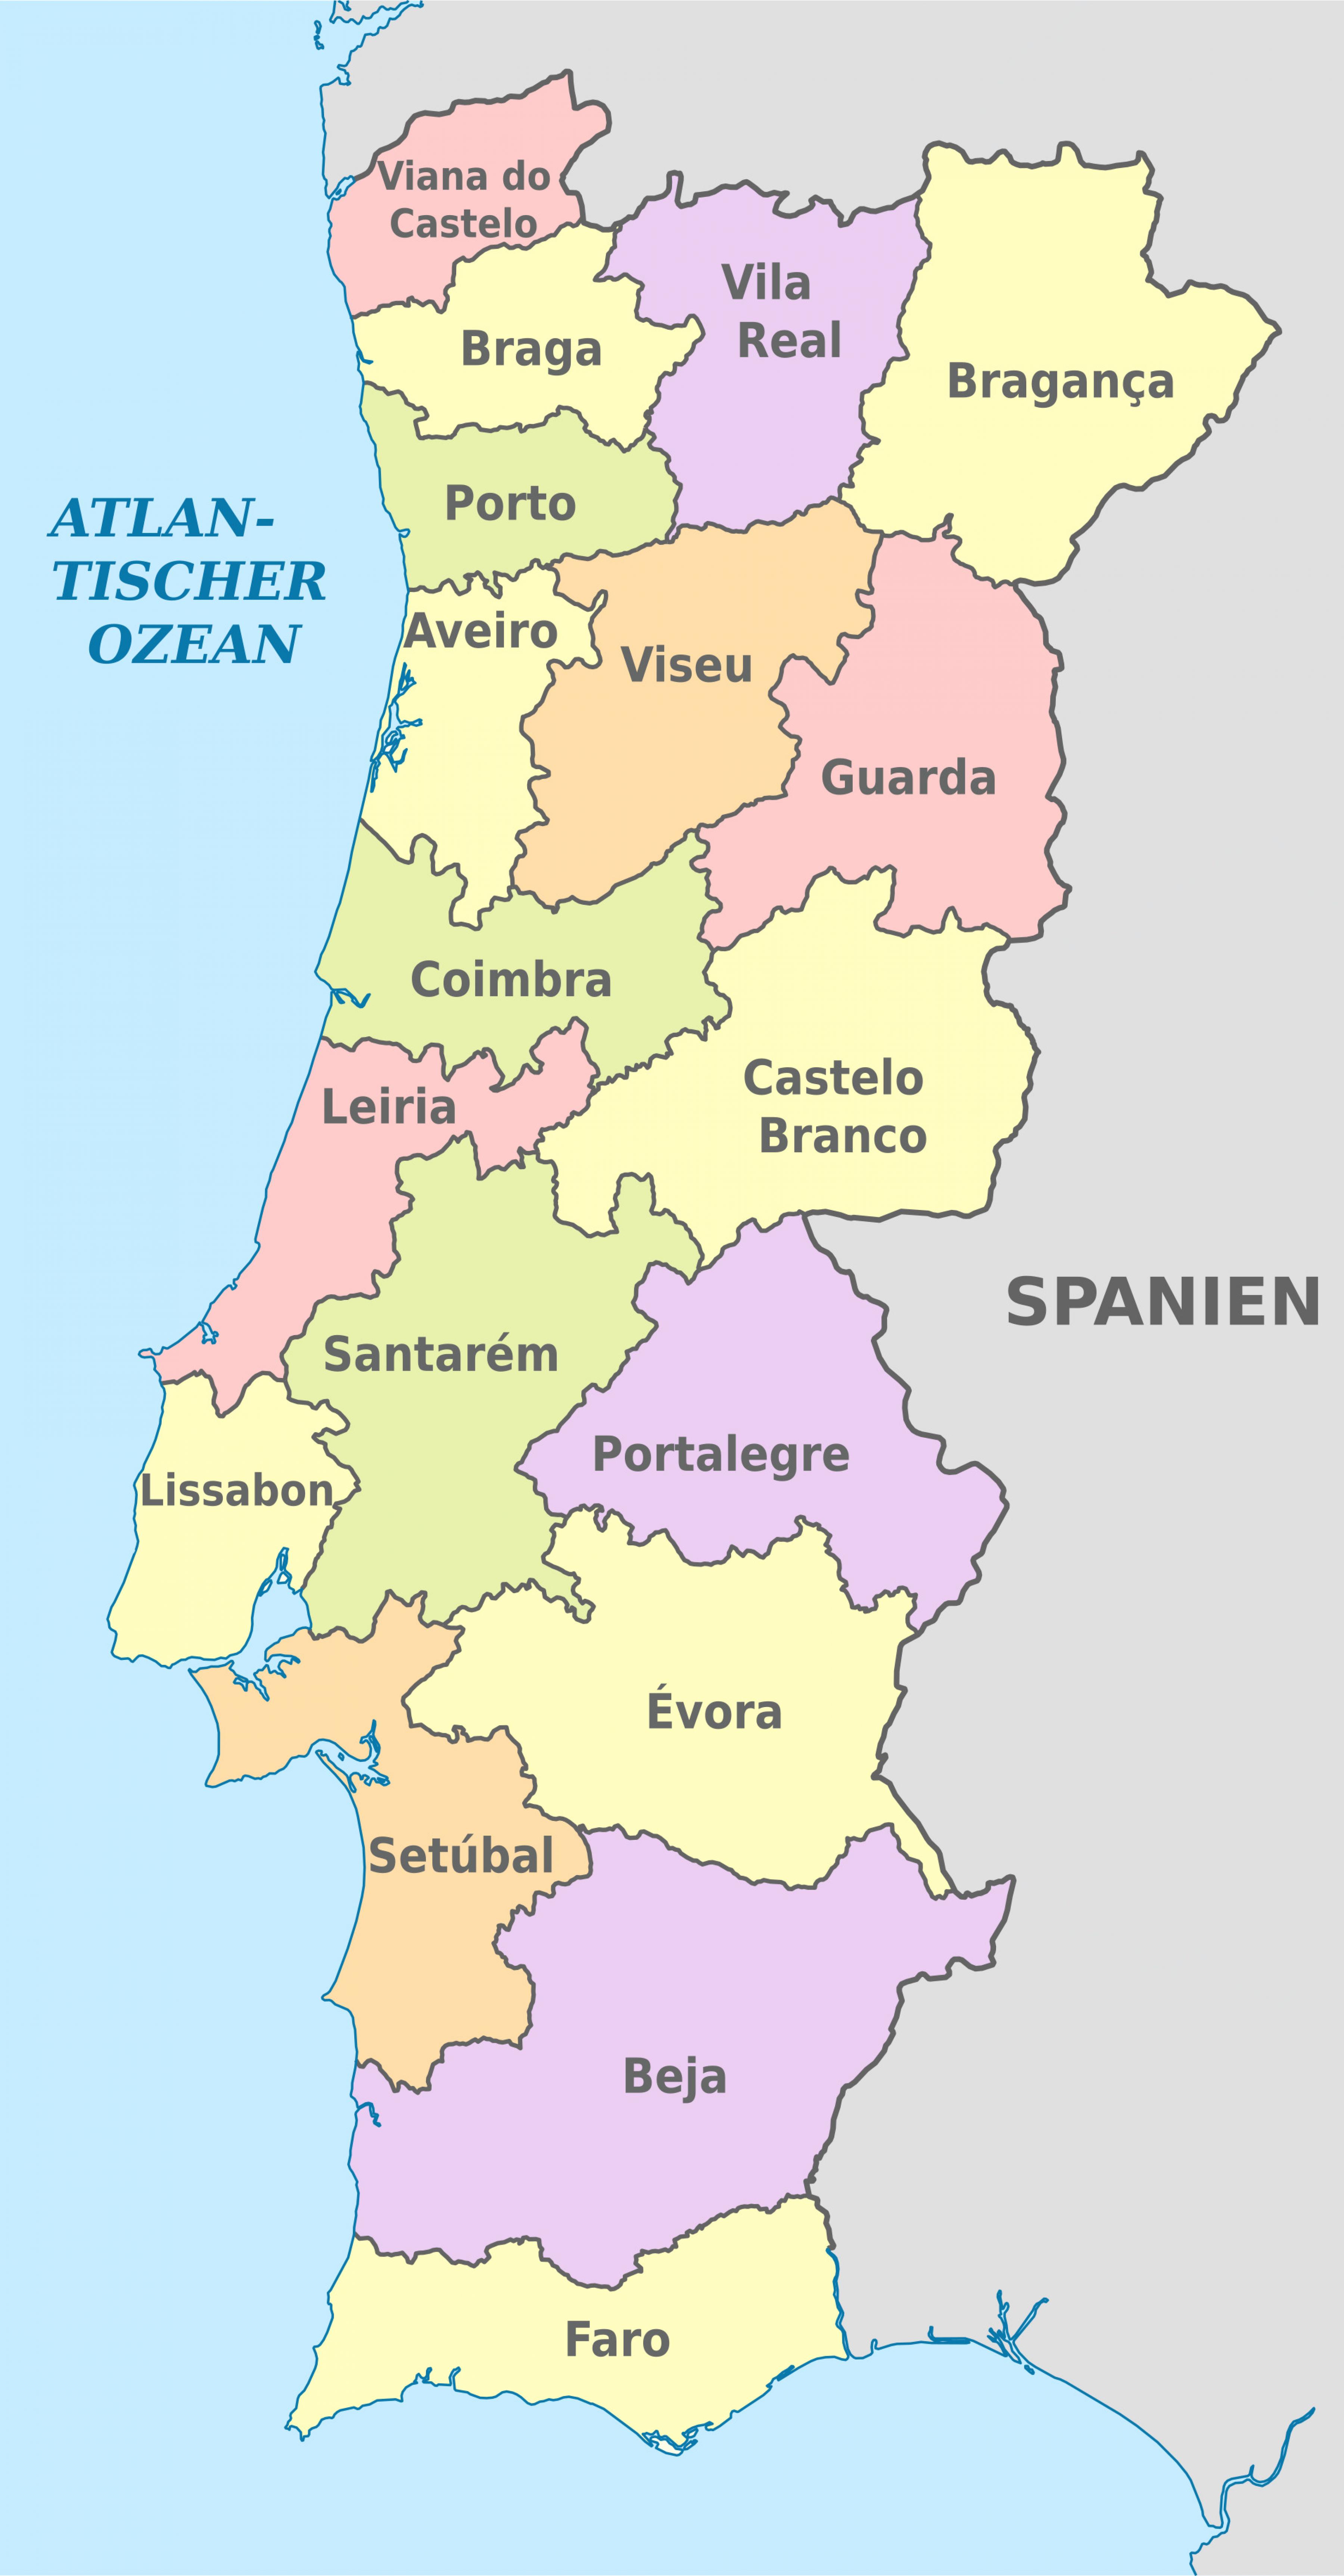 Mapa de espanha e portugal por zonas